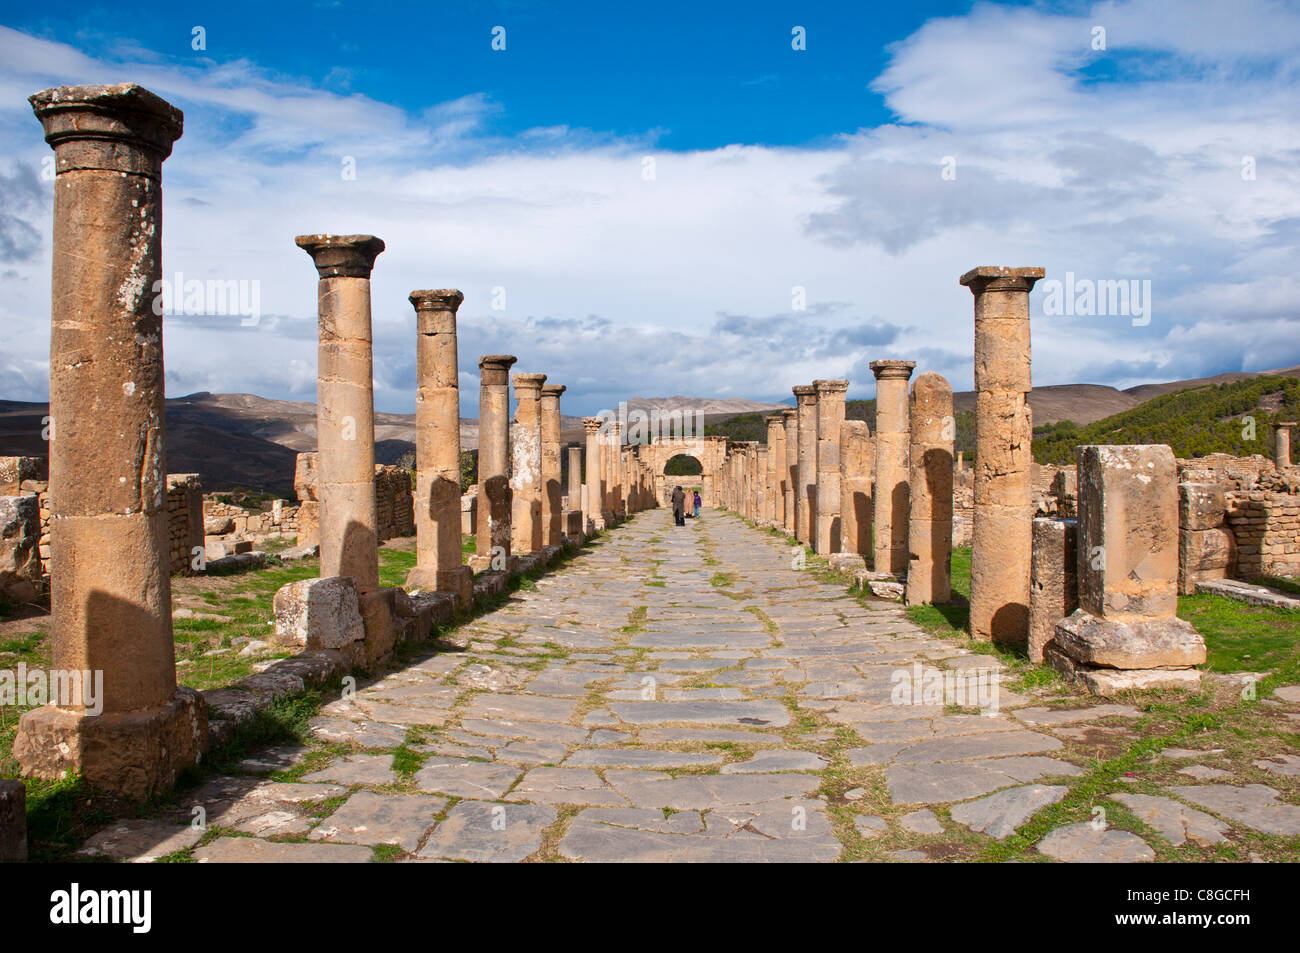 Les ruines romaines de Djemila, Site du patrimoine mondial de l'UNESCO, l'Algérie, l'Afrique du Nord Banque D'Images